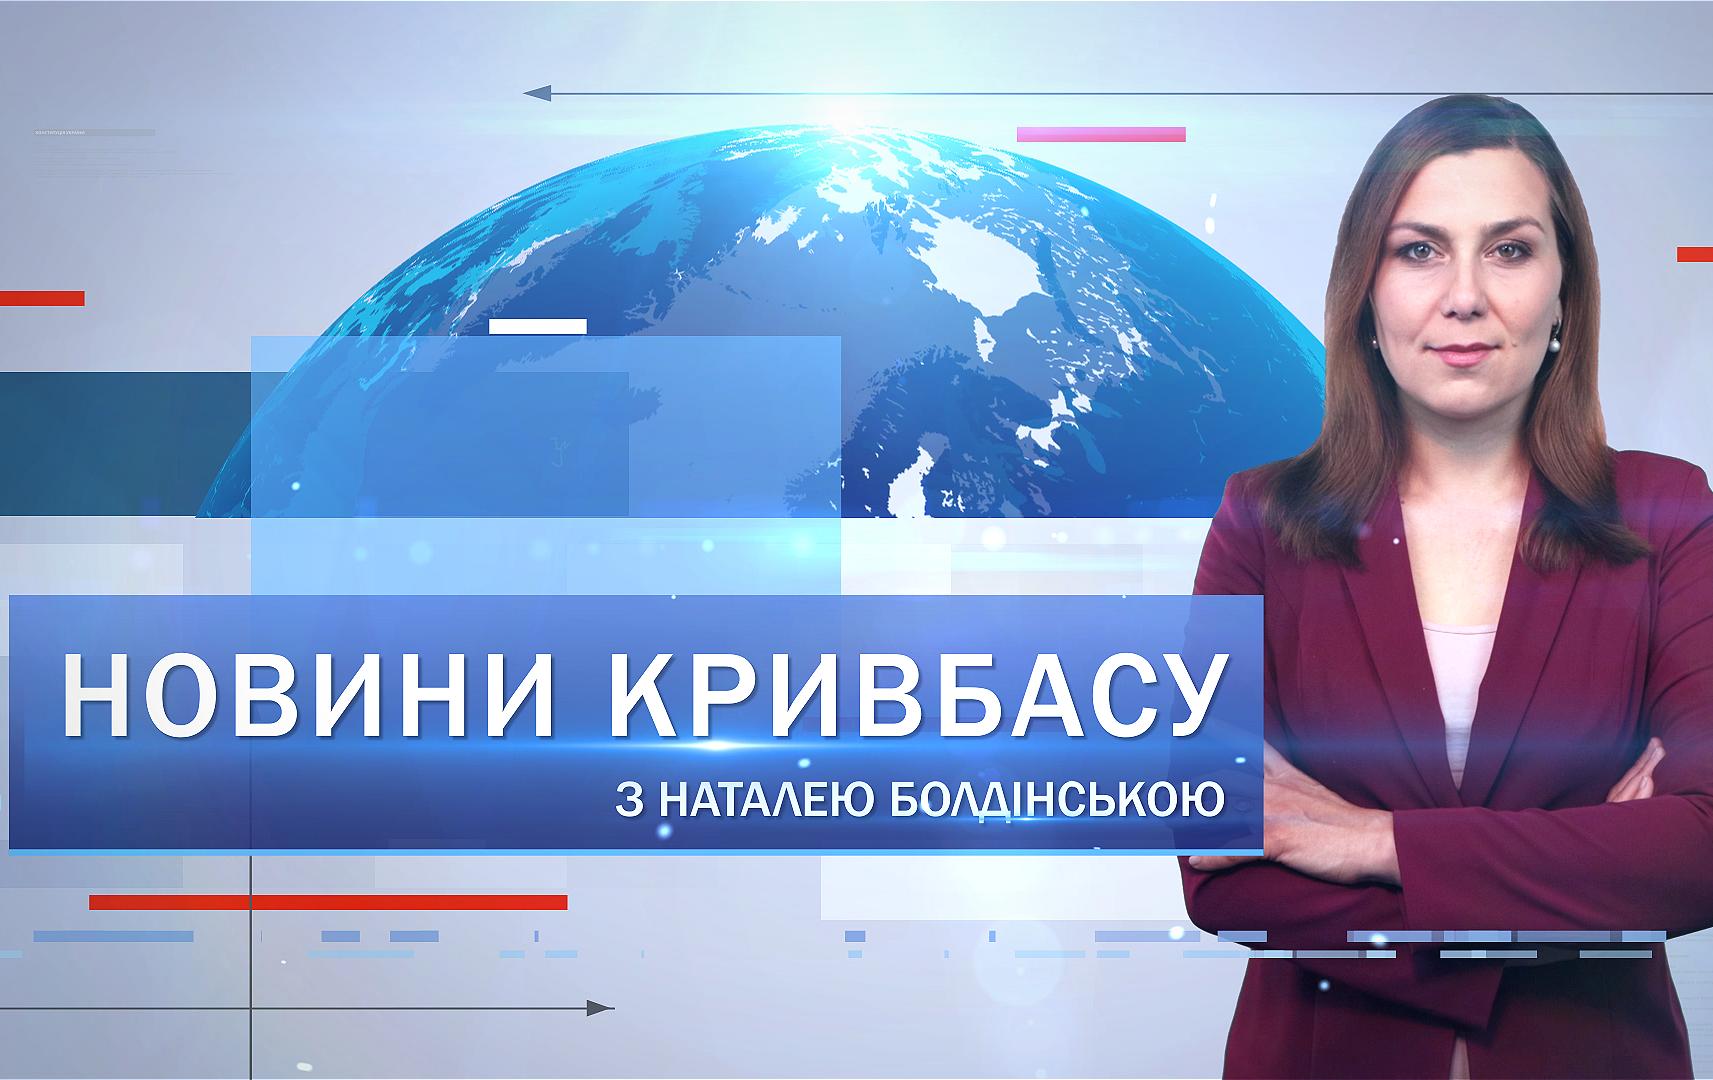 Новости Кривбасса 3 октября: 5 волна выдачи проднаборов, ярмарка в поддержку ВСУ, похоронили медика